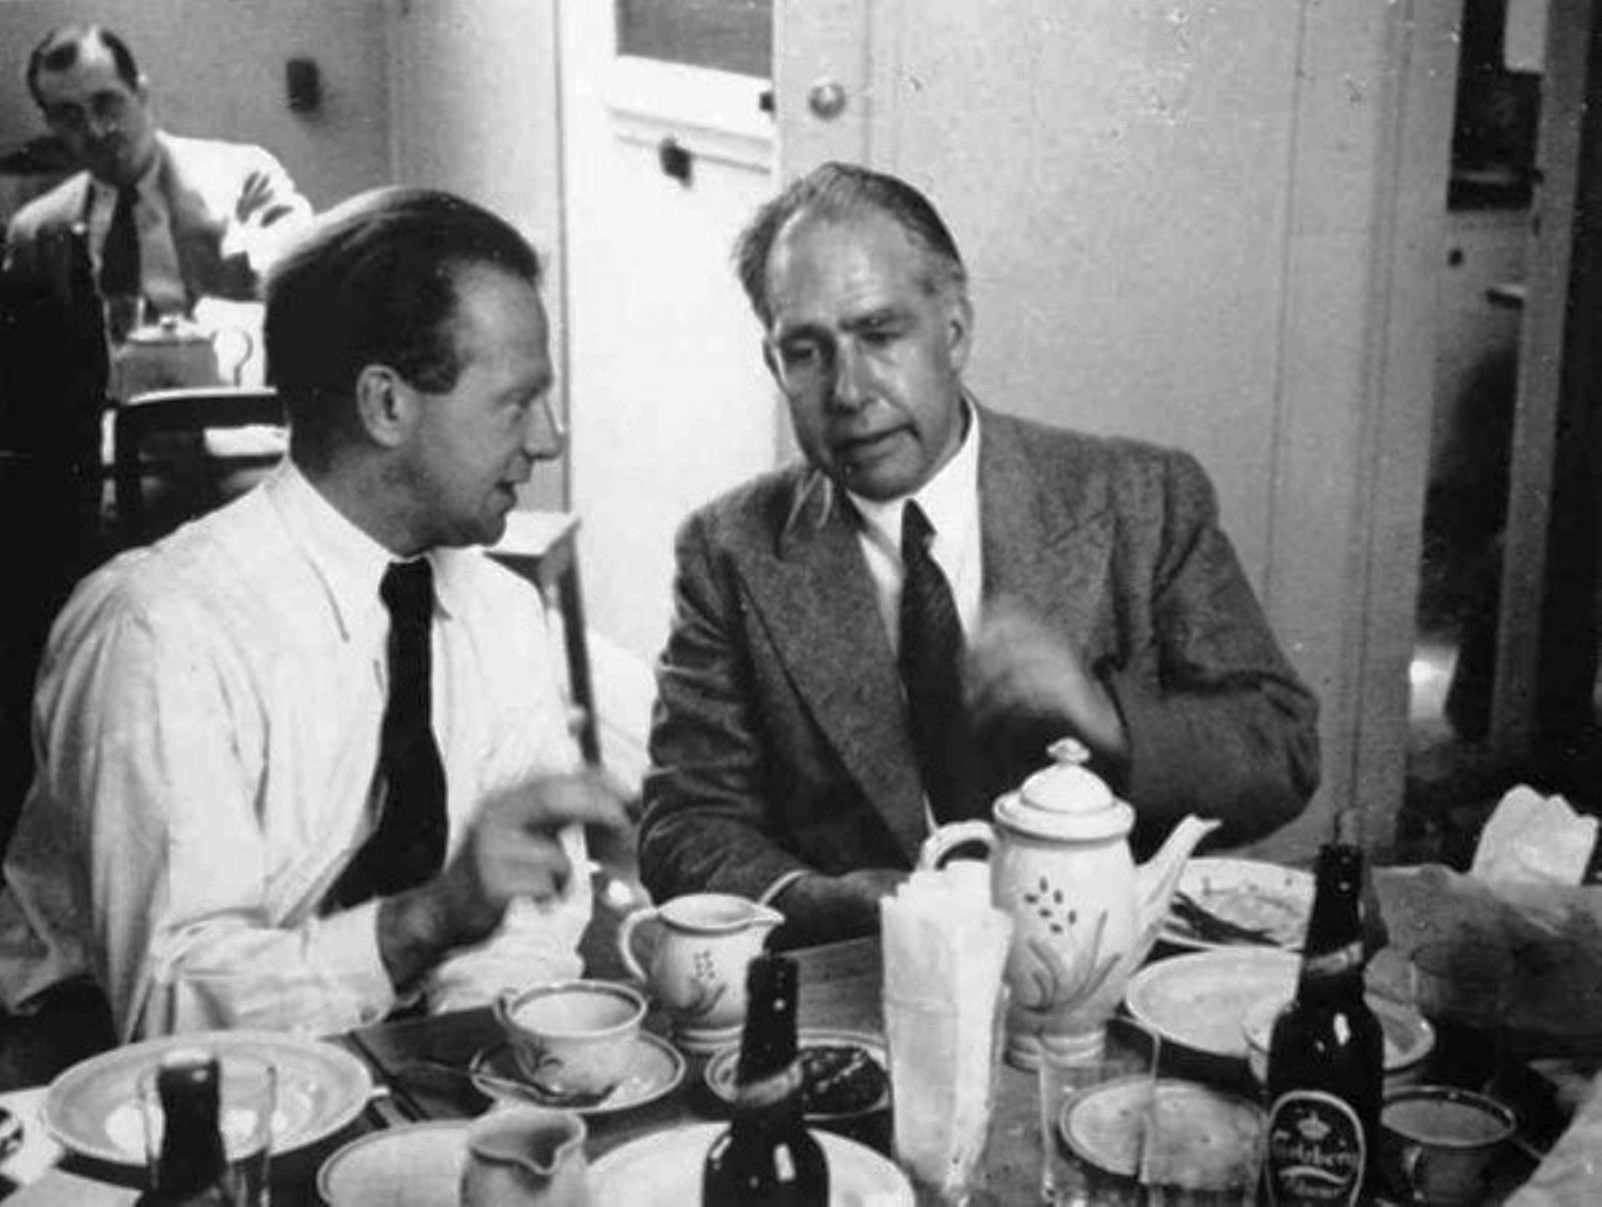 De gauche à droite, Werner Heisenberg et Niels Bohr en 1934. © Fermilab, U.S. Department of Energy